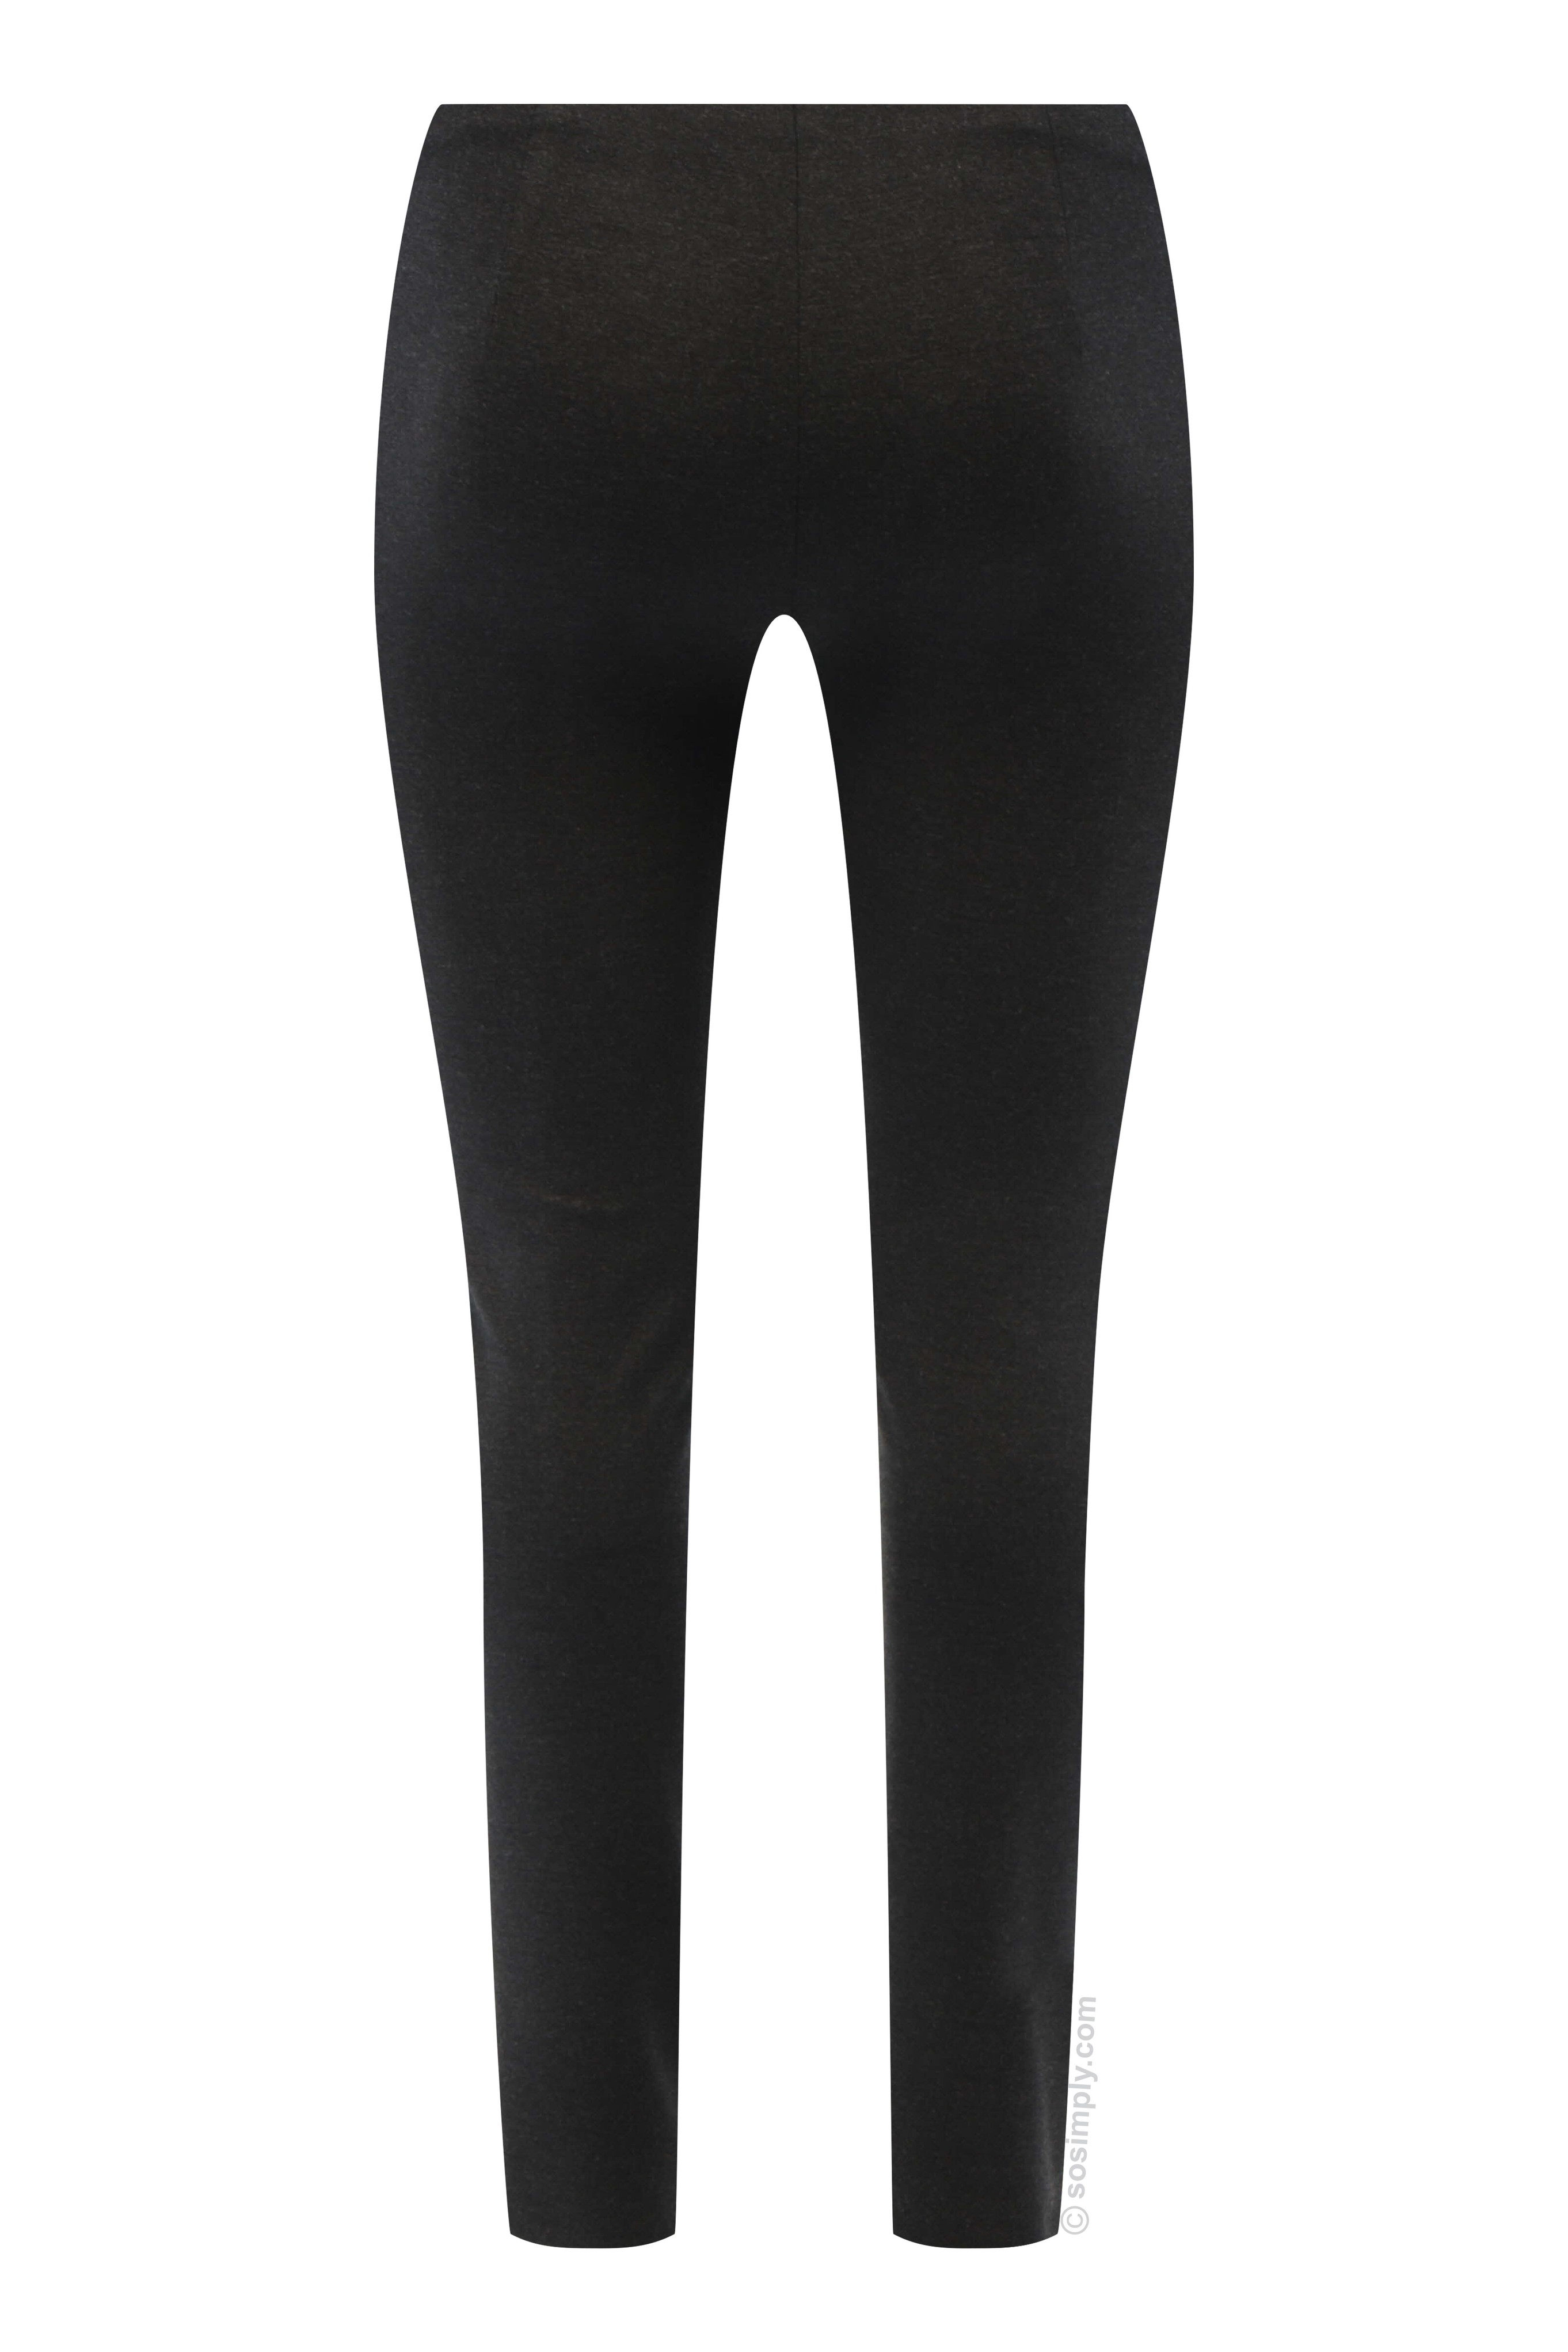 Robell Mimi Plain Full Length Trouser - So Simply